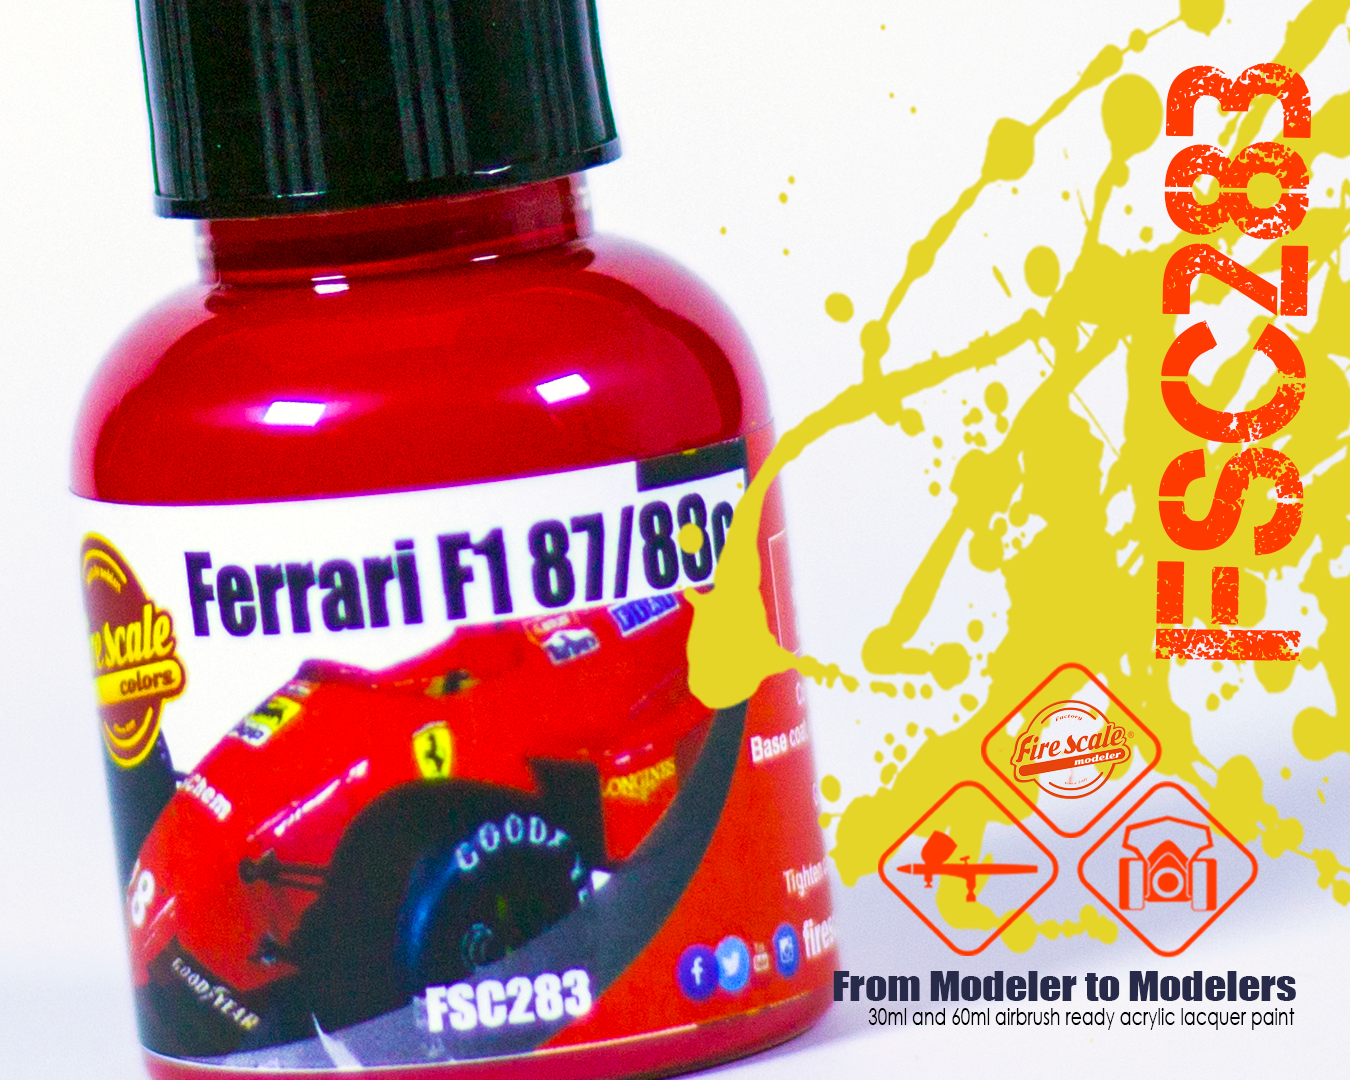 Ferrari F1 87/88C